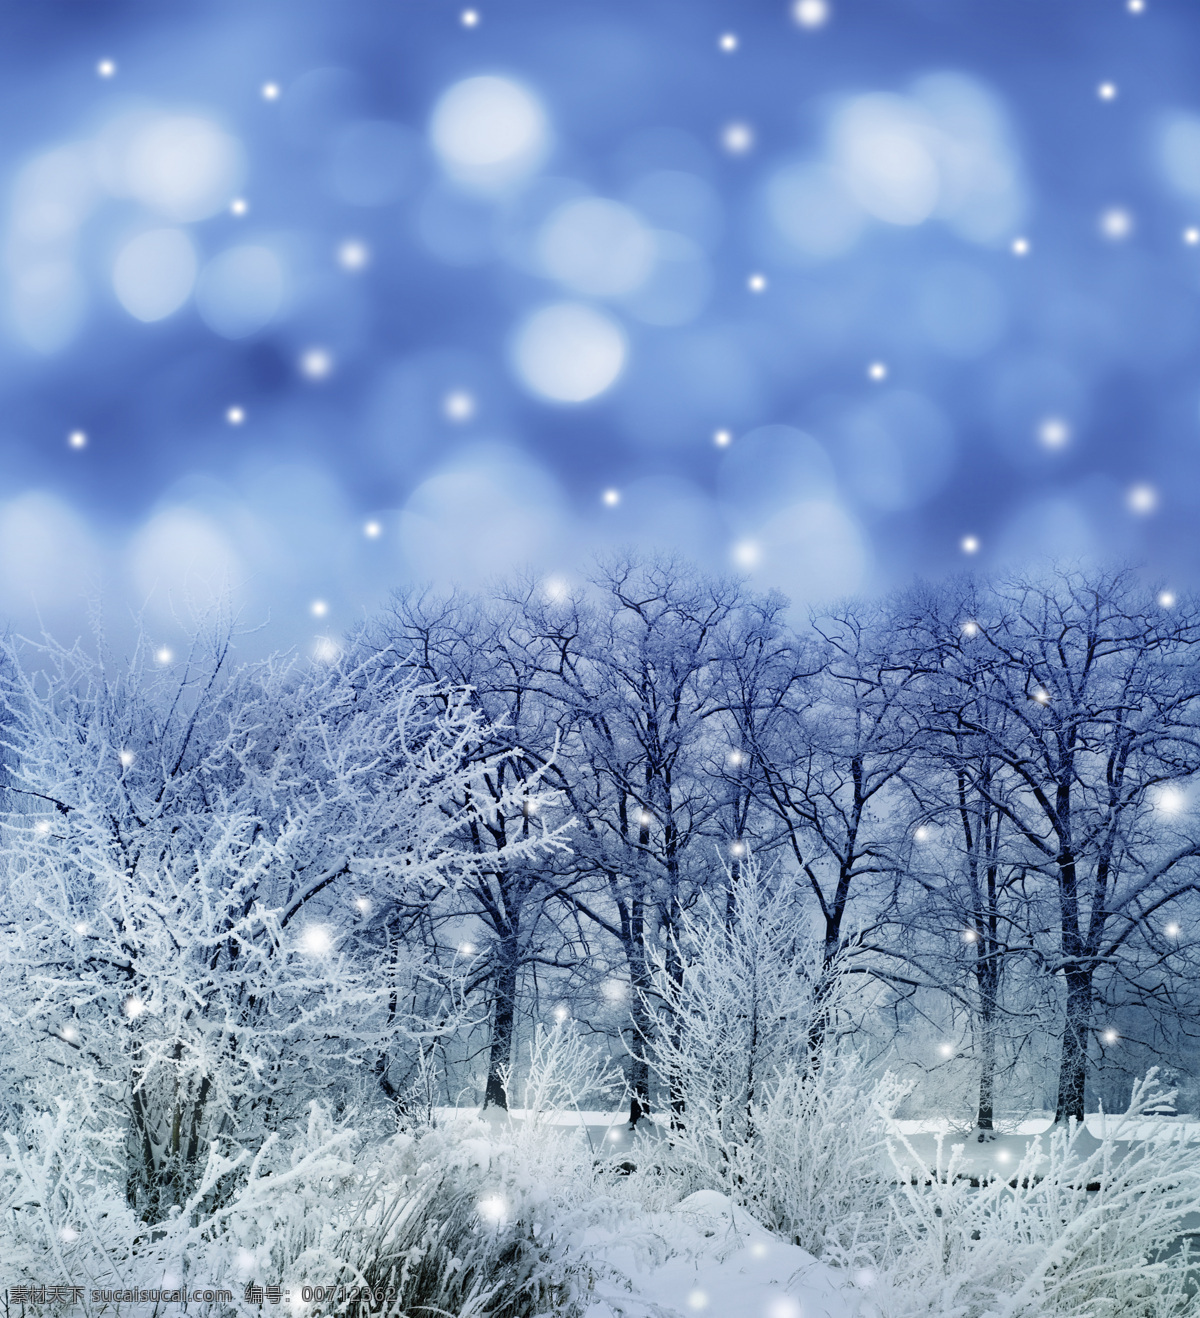 冬季 雪景 冬天 美丽风景 景色 美景 梦幻 雪花 光斑 梦幻背景 雪景图片 风景图片